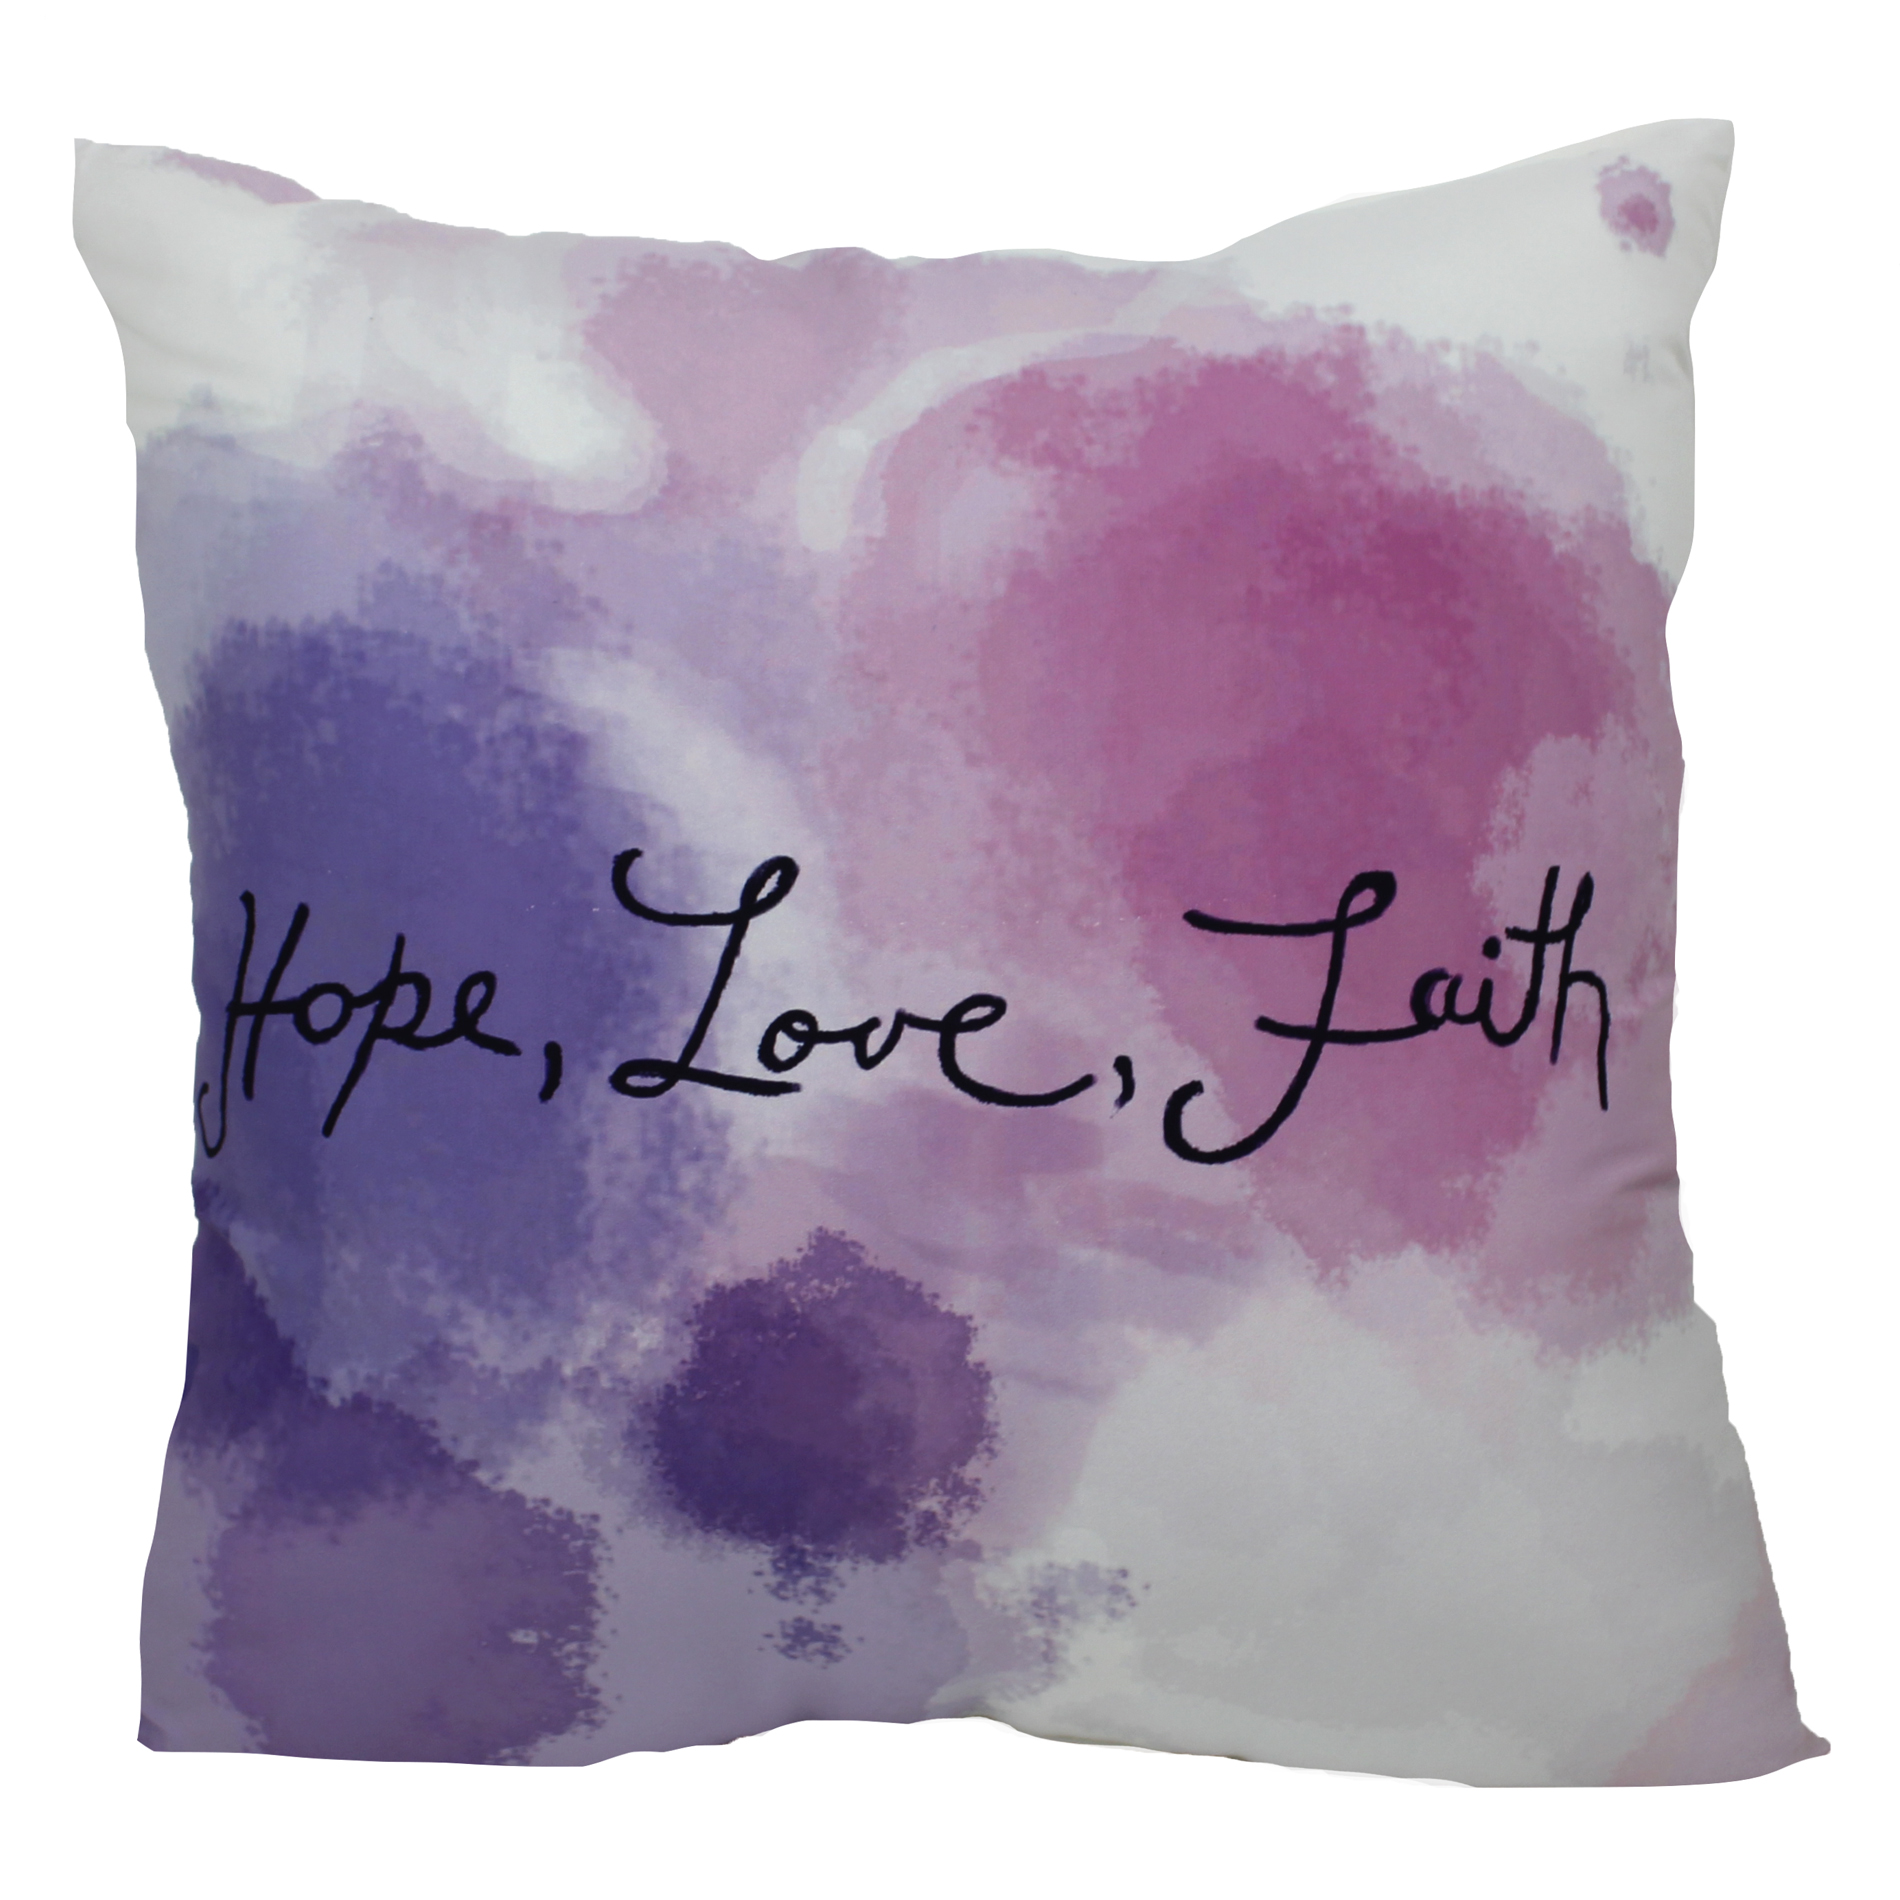 -Hope  Love Faith Pillow